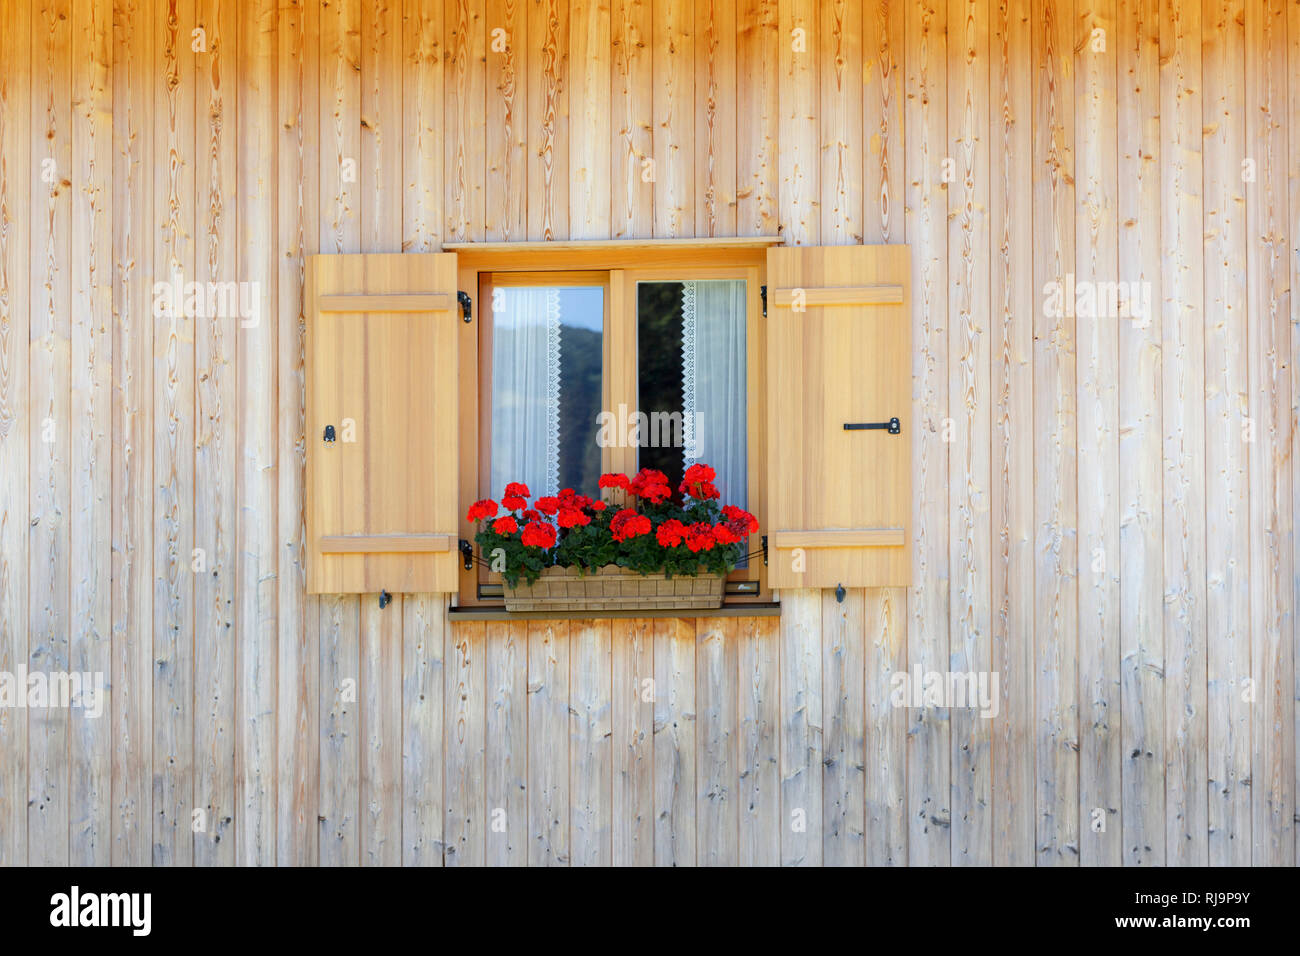 Ein Fenster in einem Holzhaus mit Gardine und Geranien davor, Stock Photo